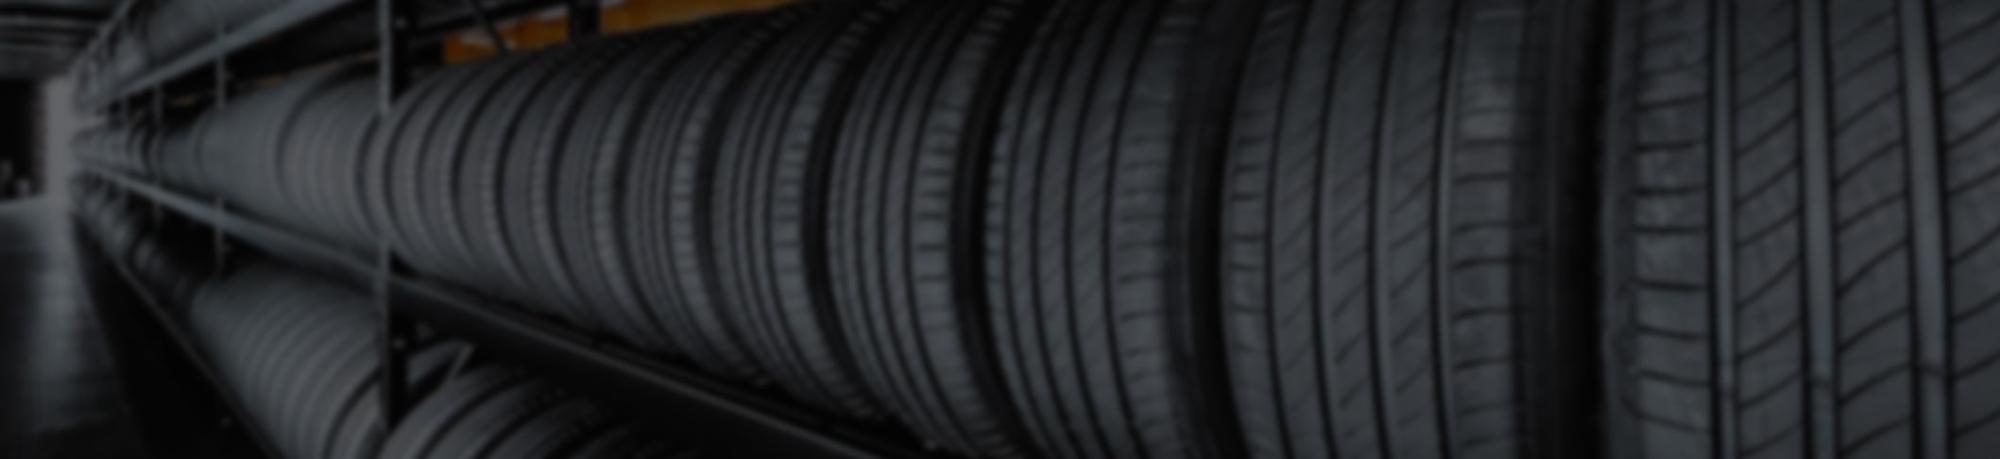 Tire Replacements & Repairs in Waukesha